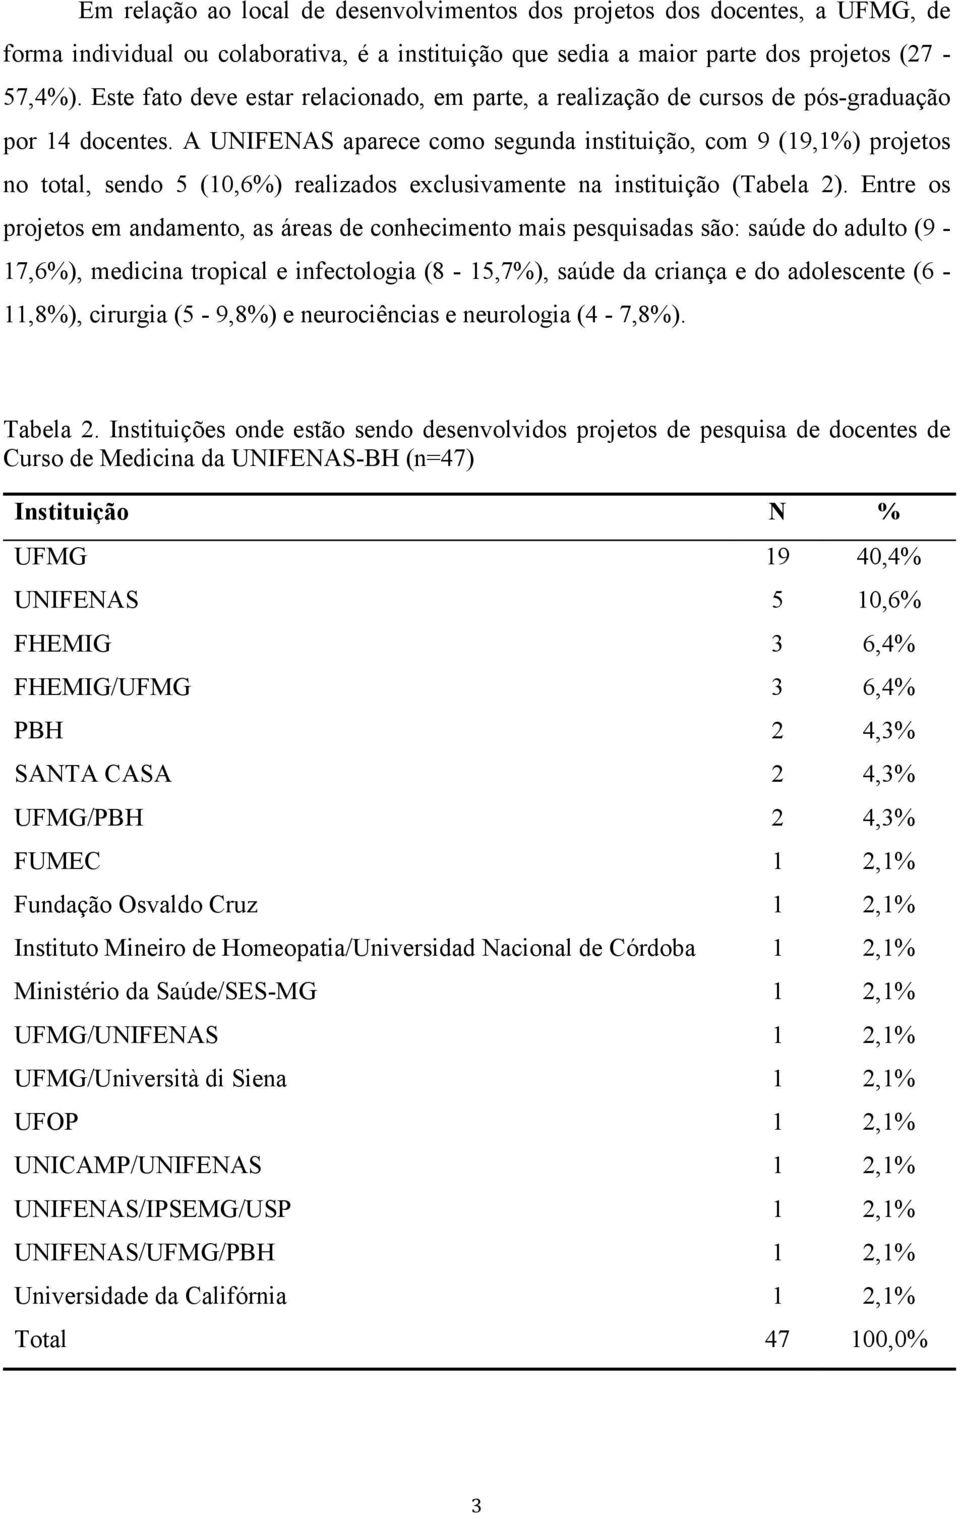 A UNIFENAS aparece como segunda instituição, com 9 (19,1%) projetos no total, sendo 5 (10,6%) realizados exclusivamente na instituição (Tabela 2).